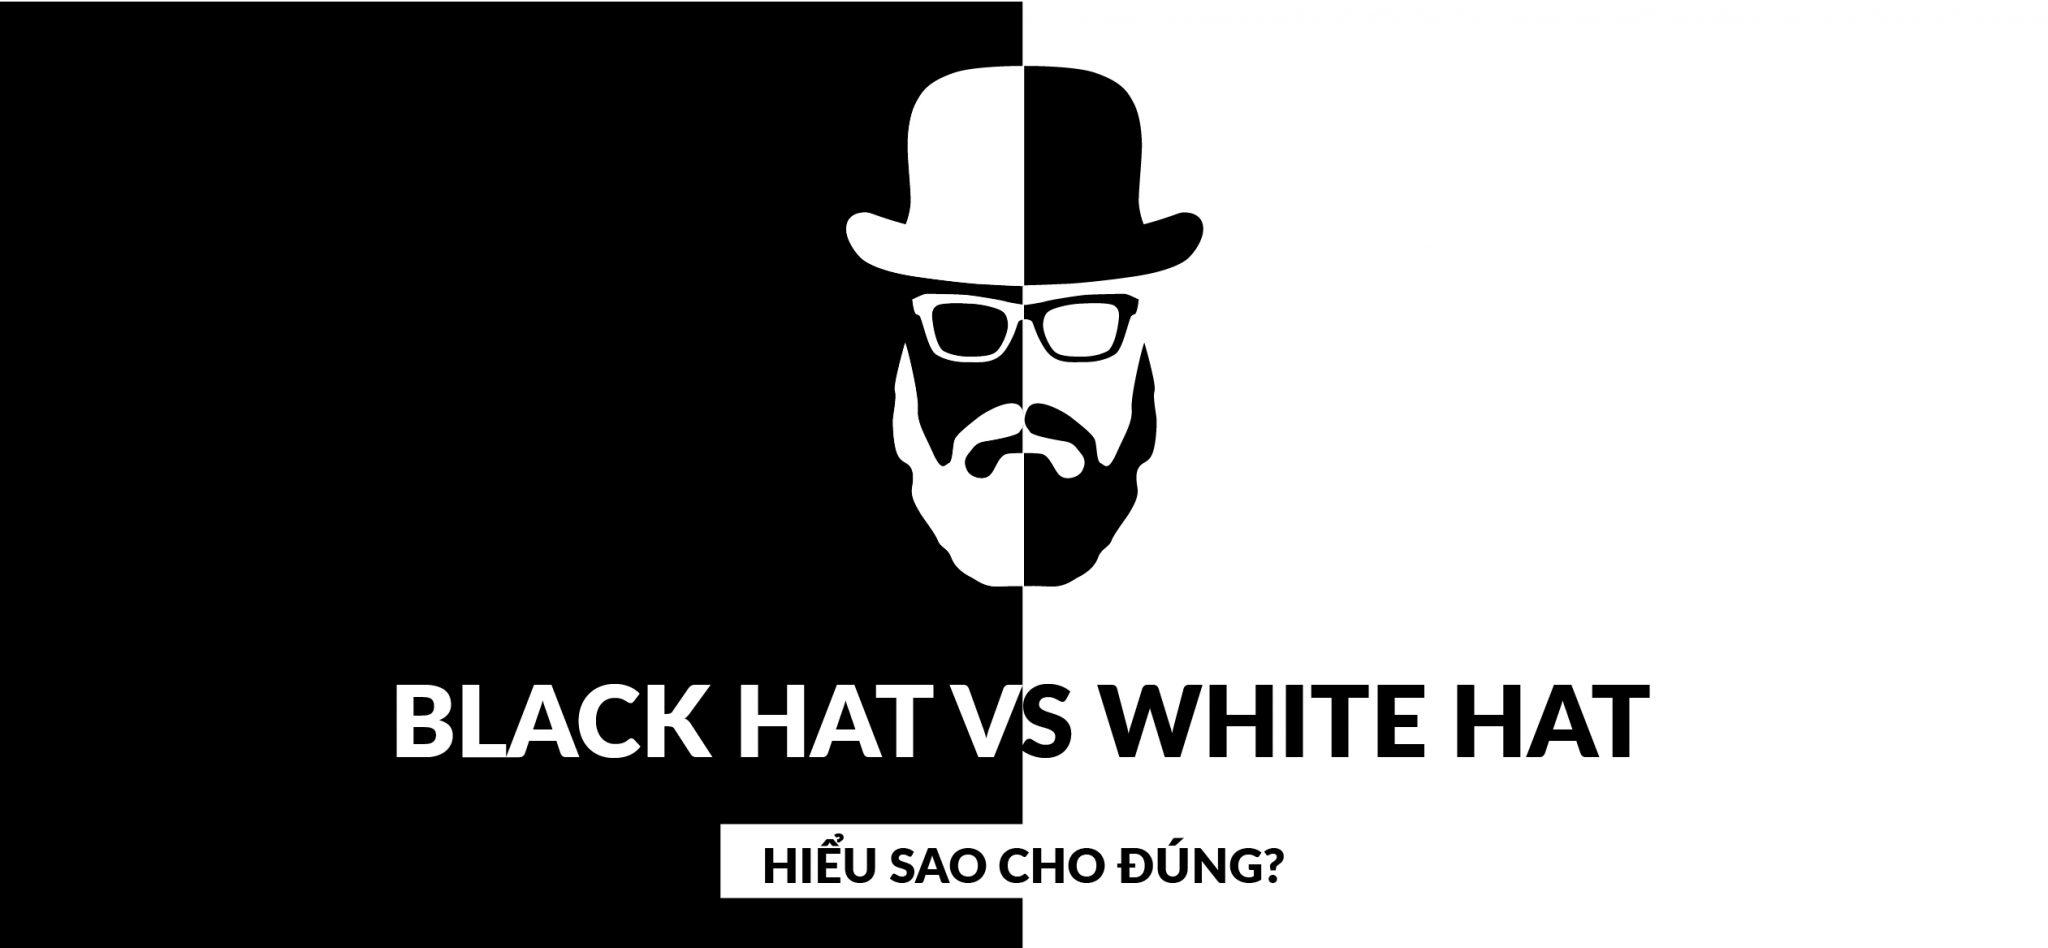 SEO mũ đen và SEO mũ trắng? Có thật tồn tại 2 định nghĩa này không?